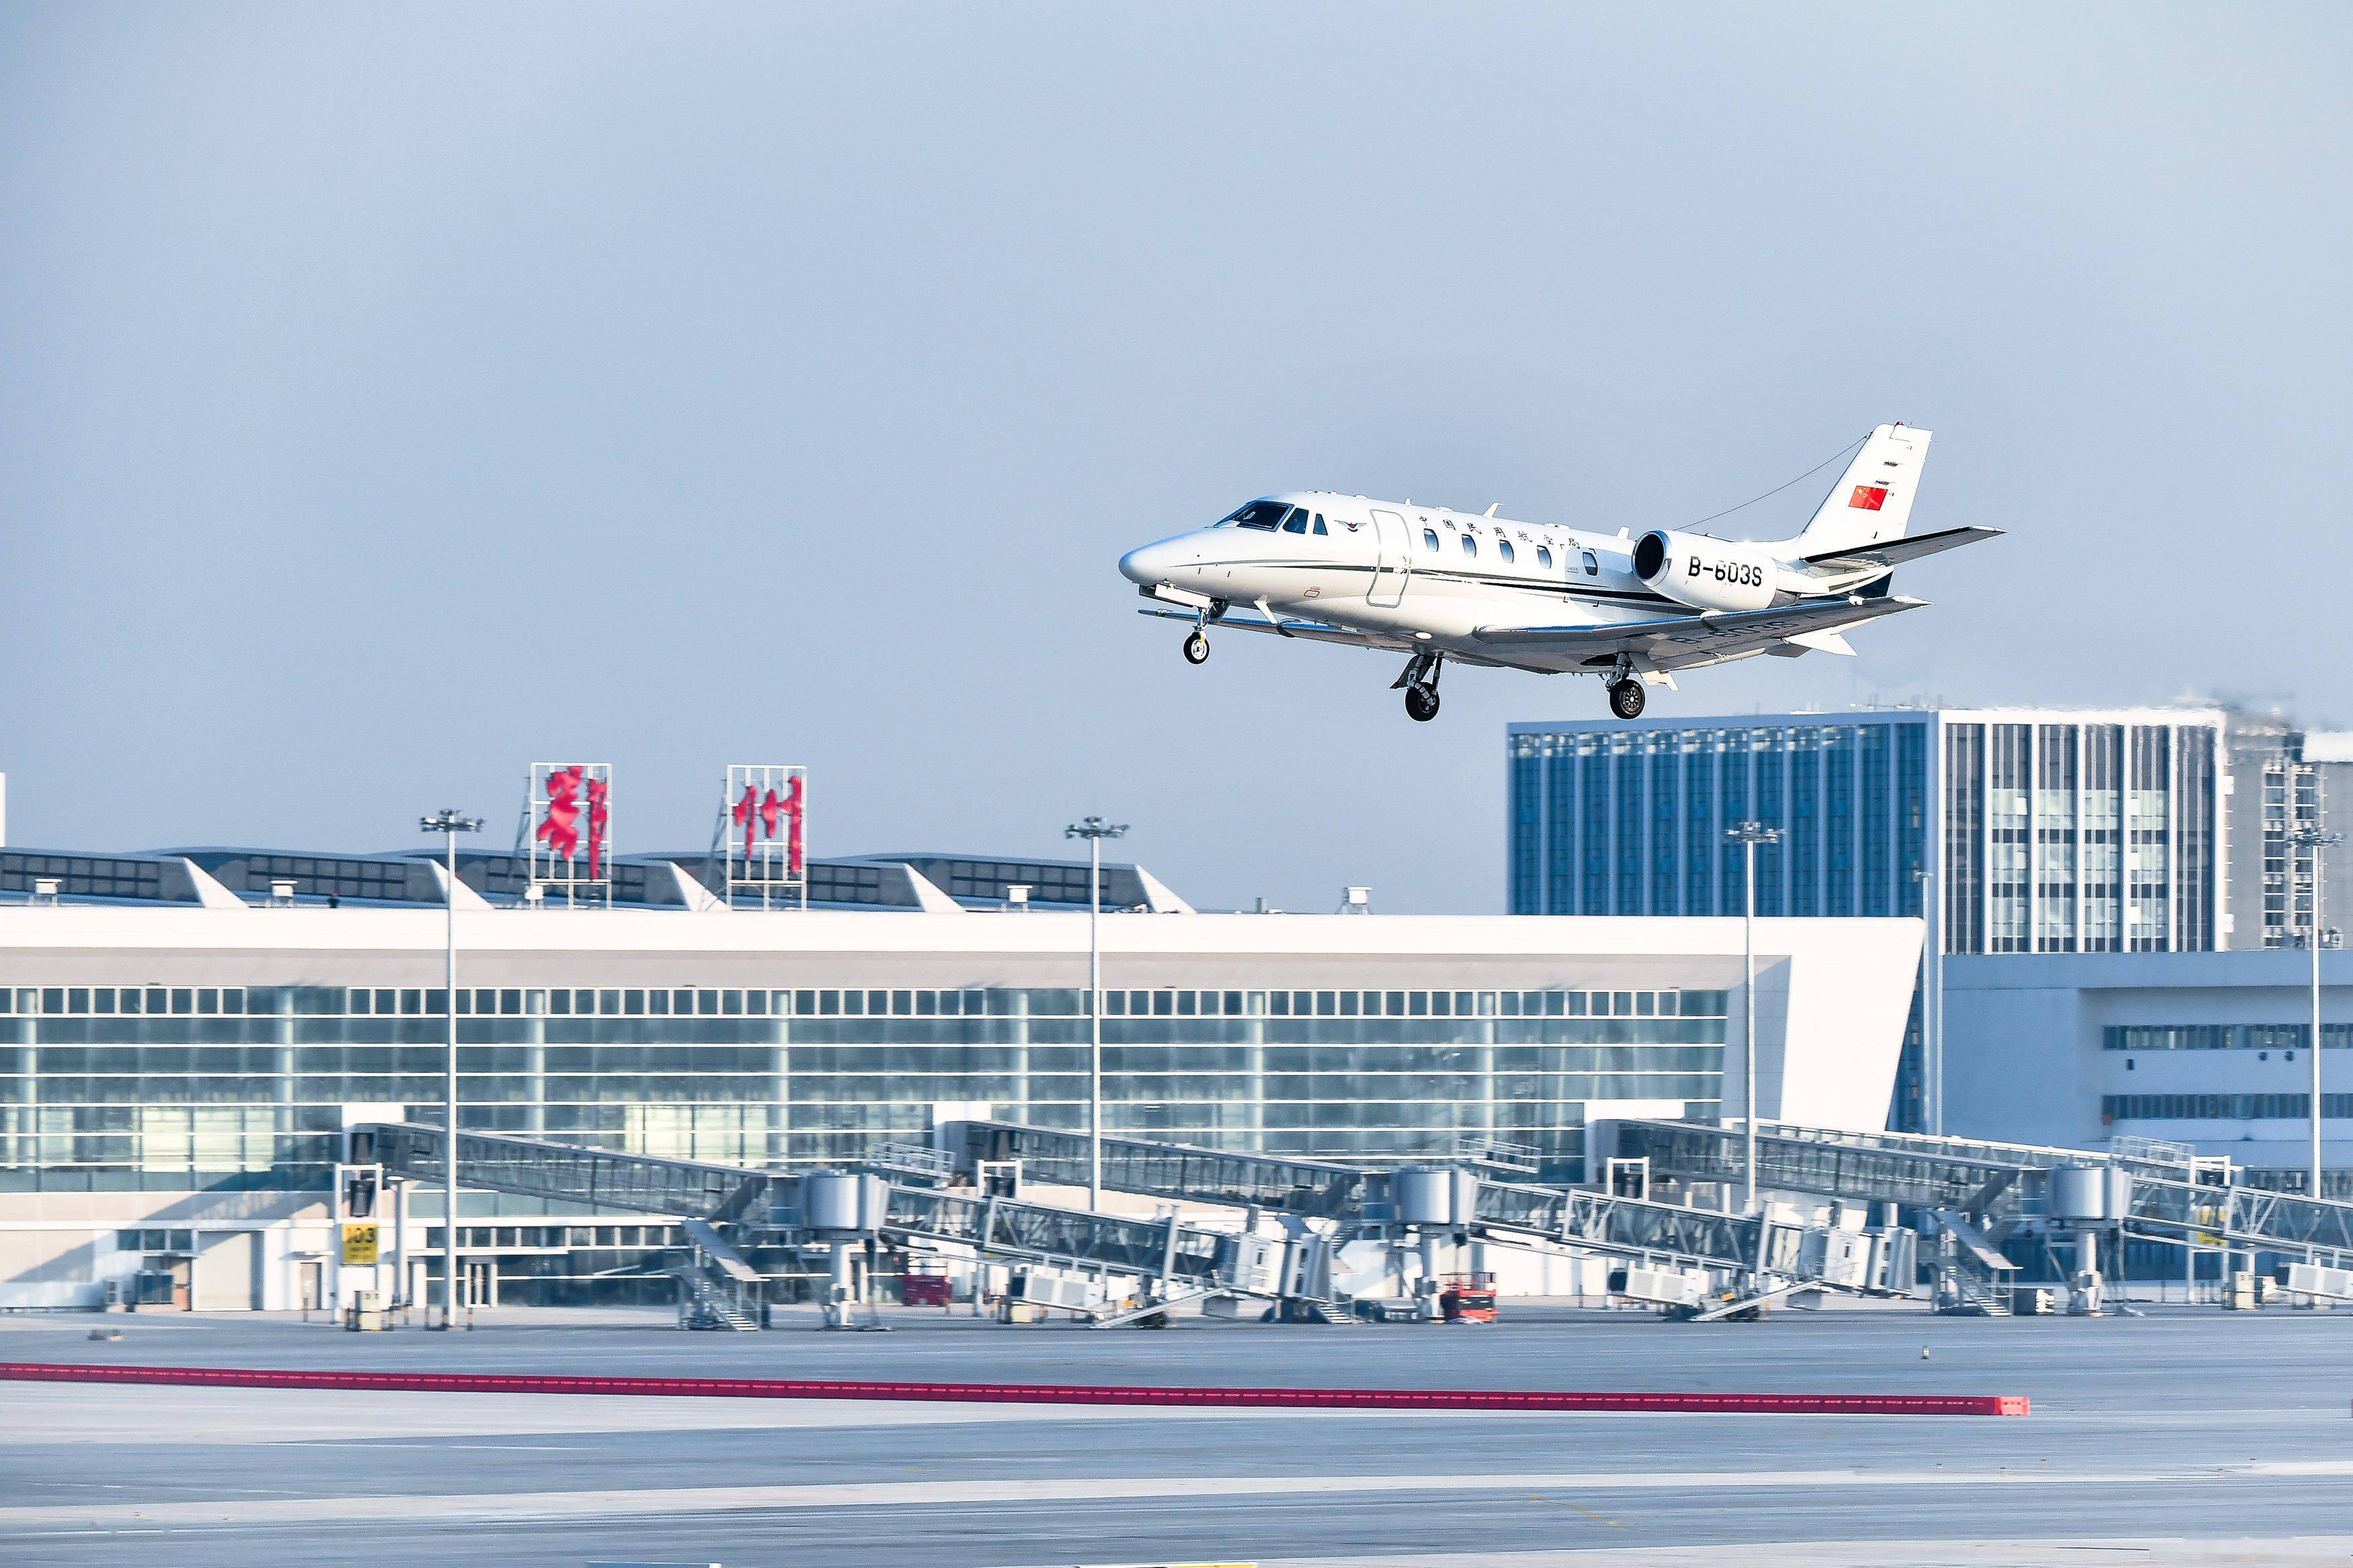 12月29日,校飞飞机在鄂州花湖机场降落滑行